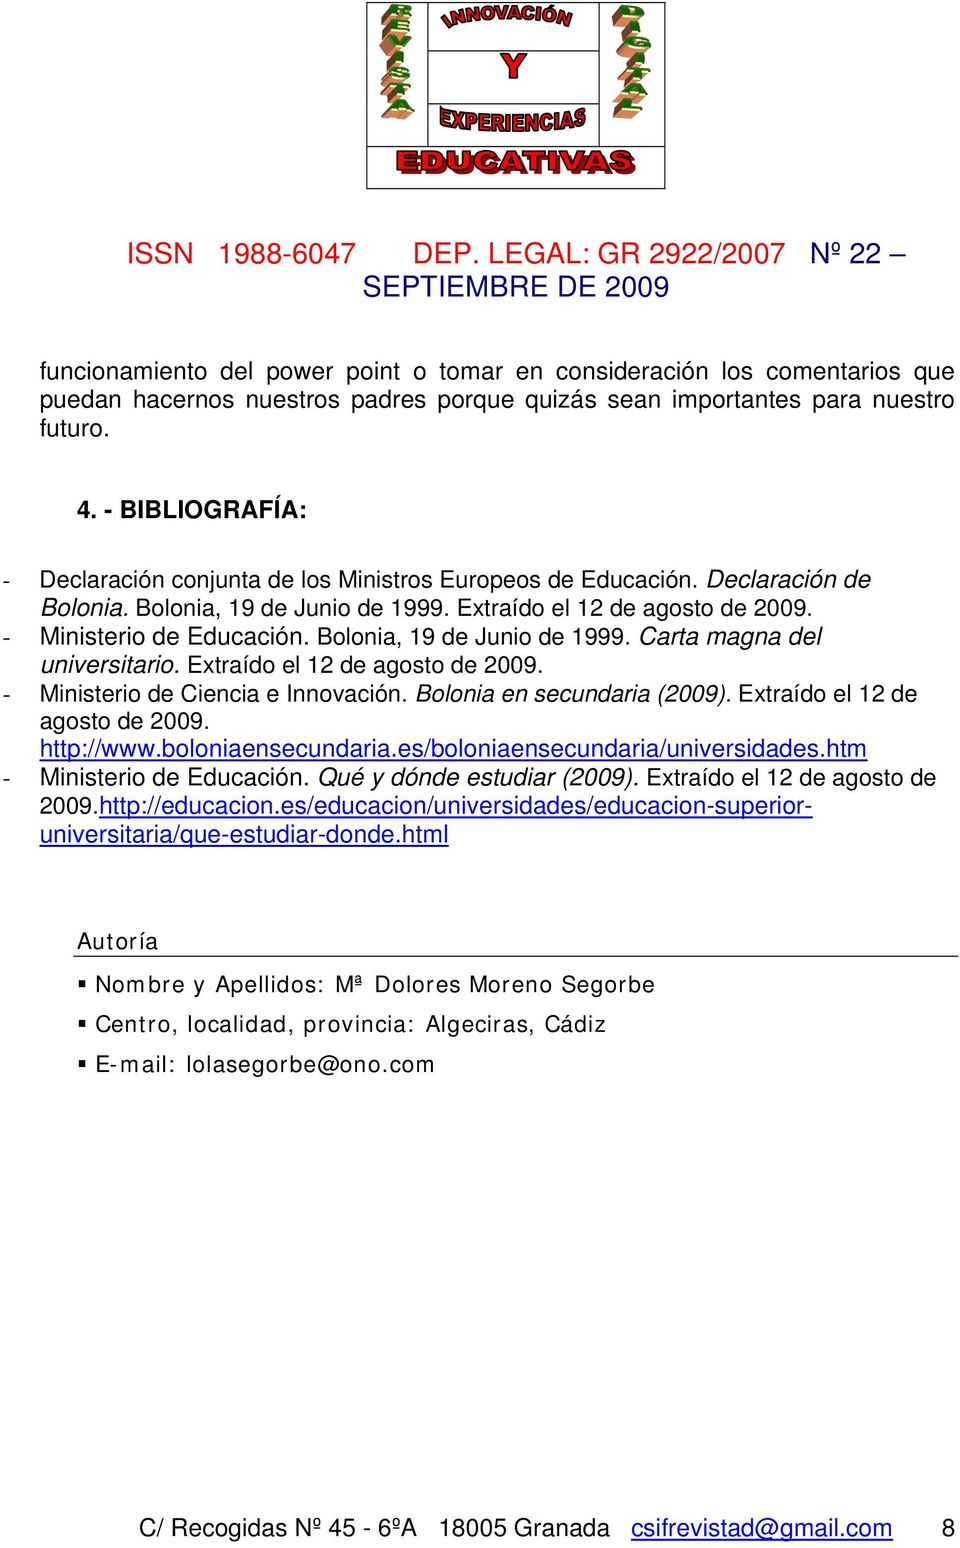 Bolonia, 19 de Junio de 1999. Carta magna del universitario. Extraído el 12 de agosto de 2009. - Ministerio de Ciencia e Innovación. Bolonia en secundaria (2009). Extraído el 12 de agosto de 2009. http://www.